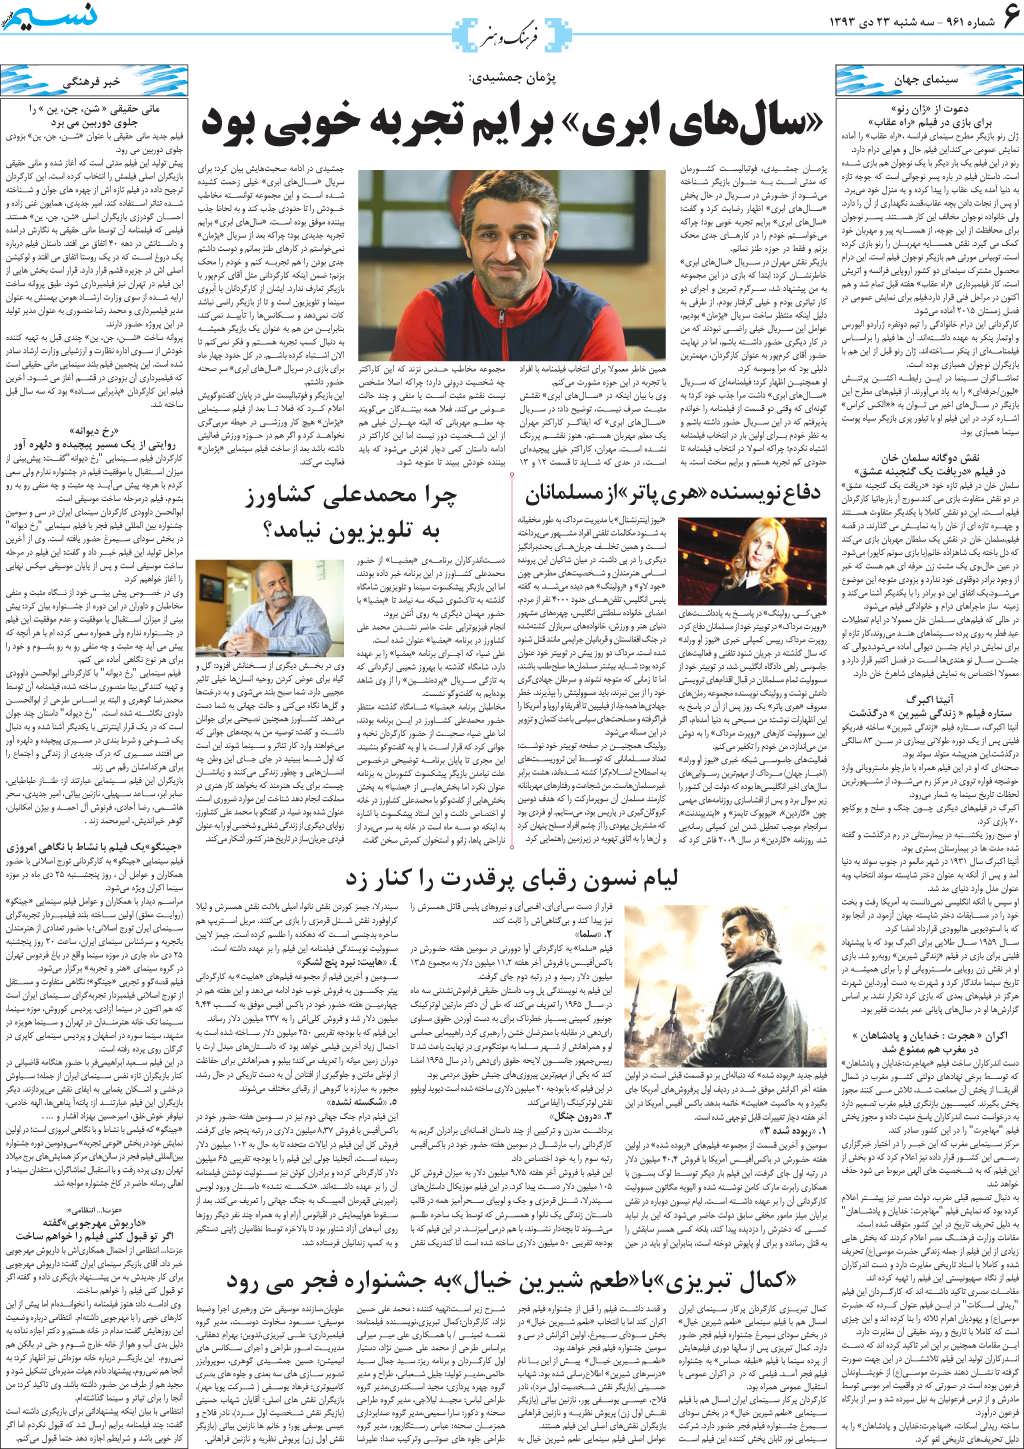 صفحه فرهنگ و هنر روزنامه نسیم شماره 961